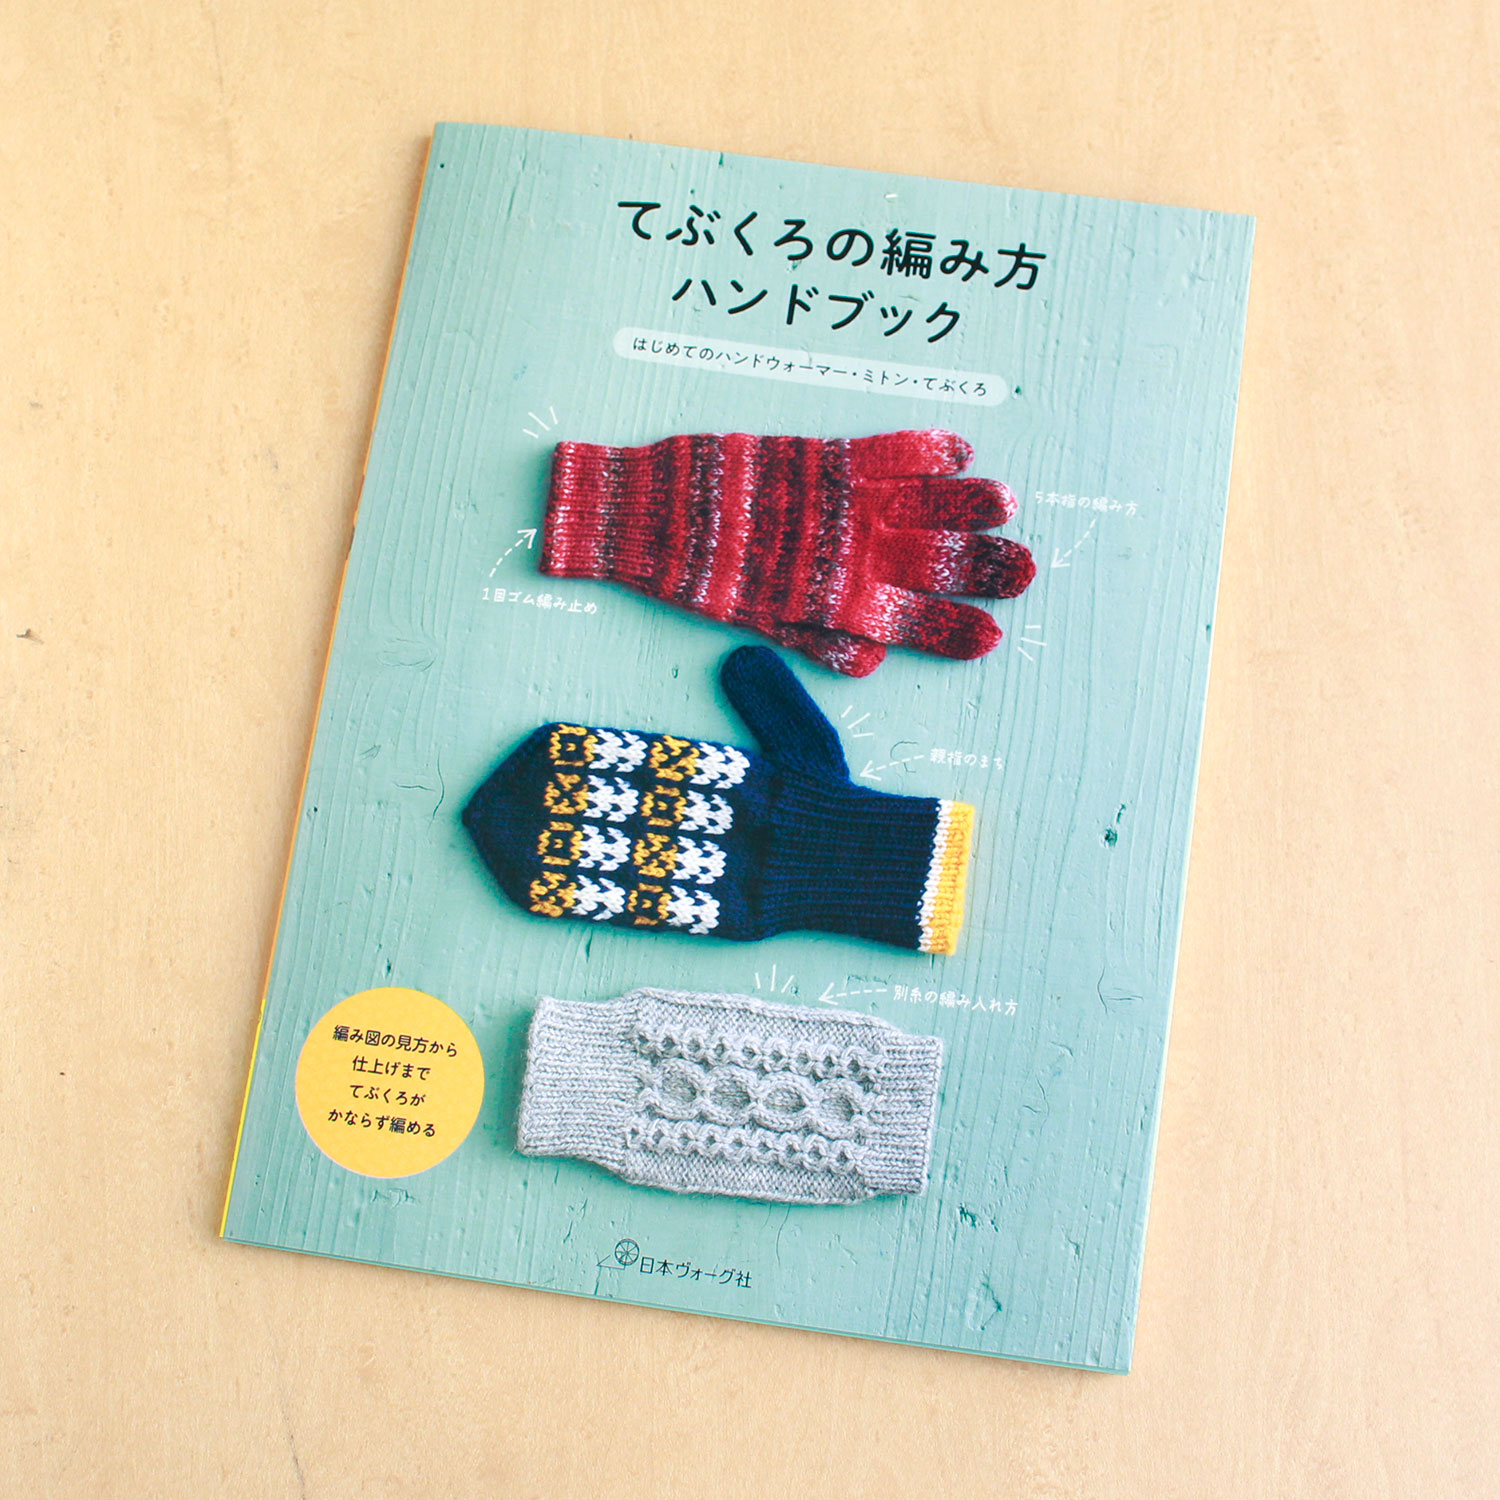 NV70745 Glove Knitting Handbook(book)